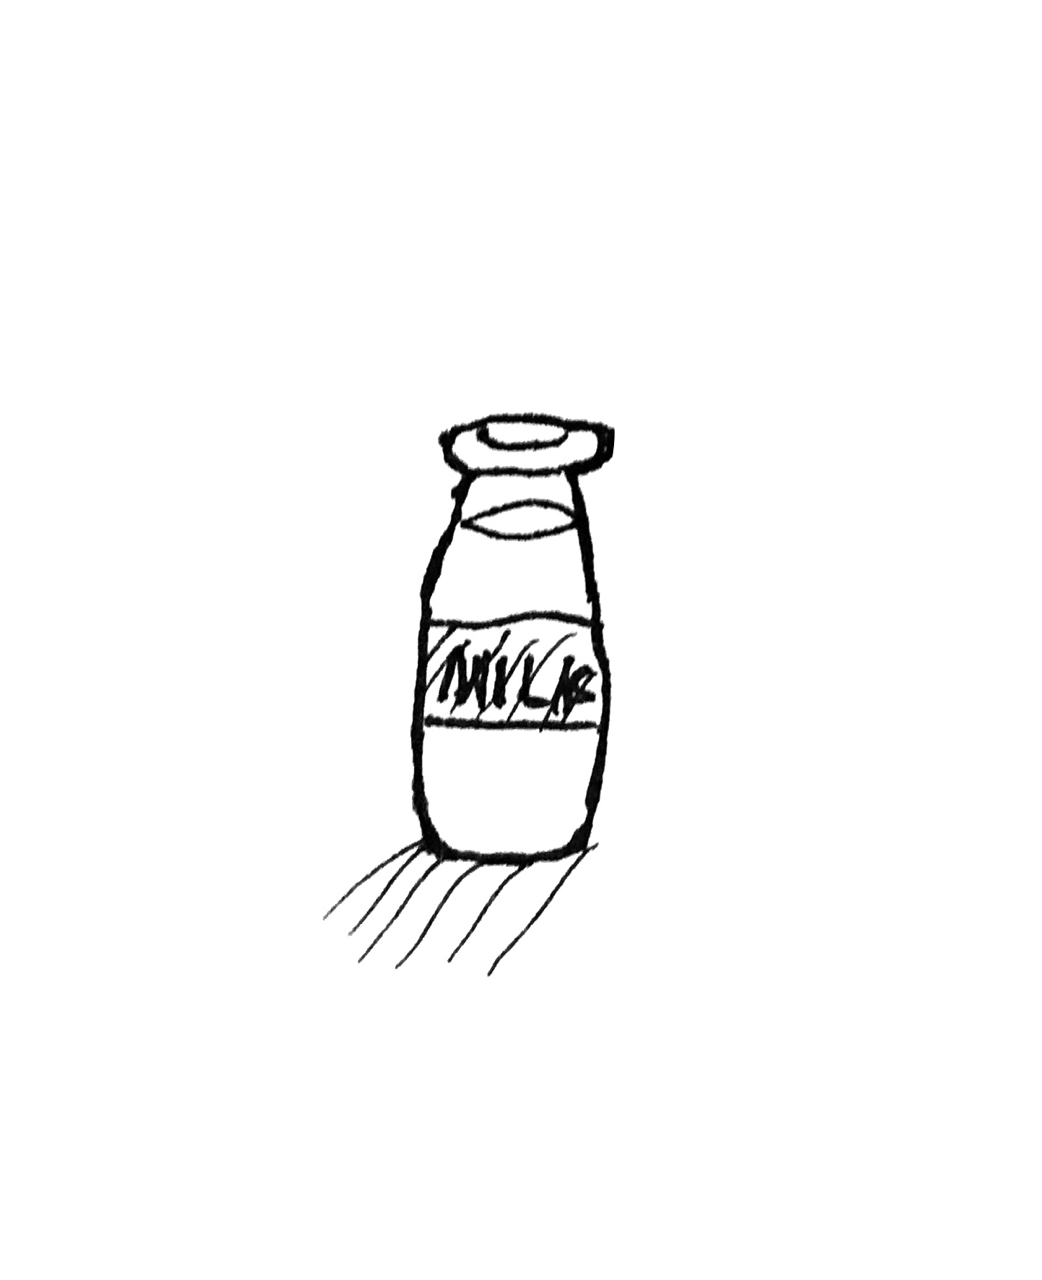 かわいい動物画像 トップ100イラスト 牛乳瓶